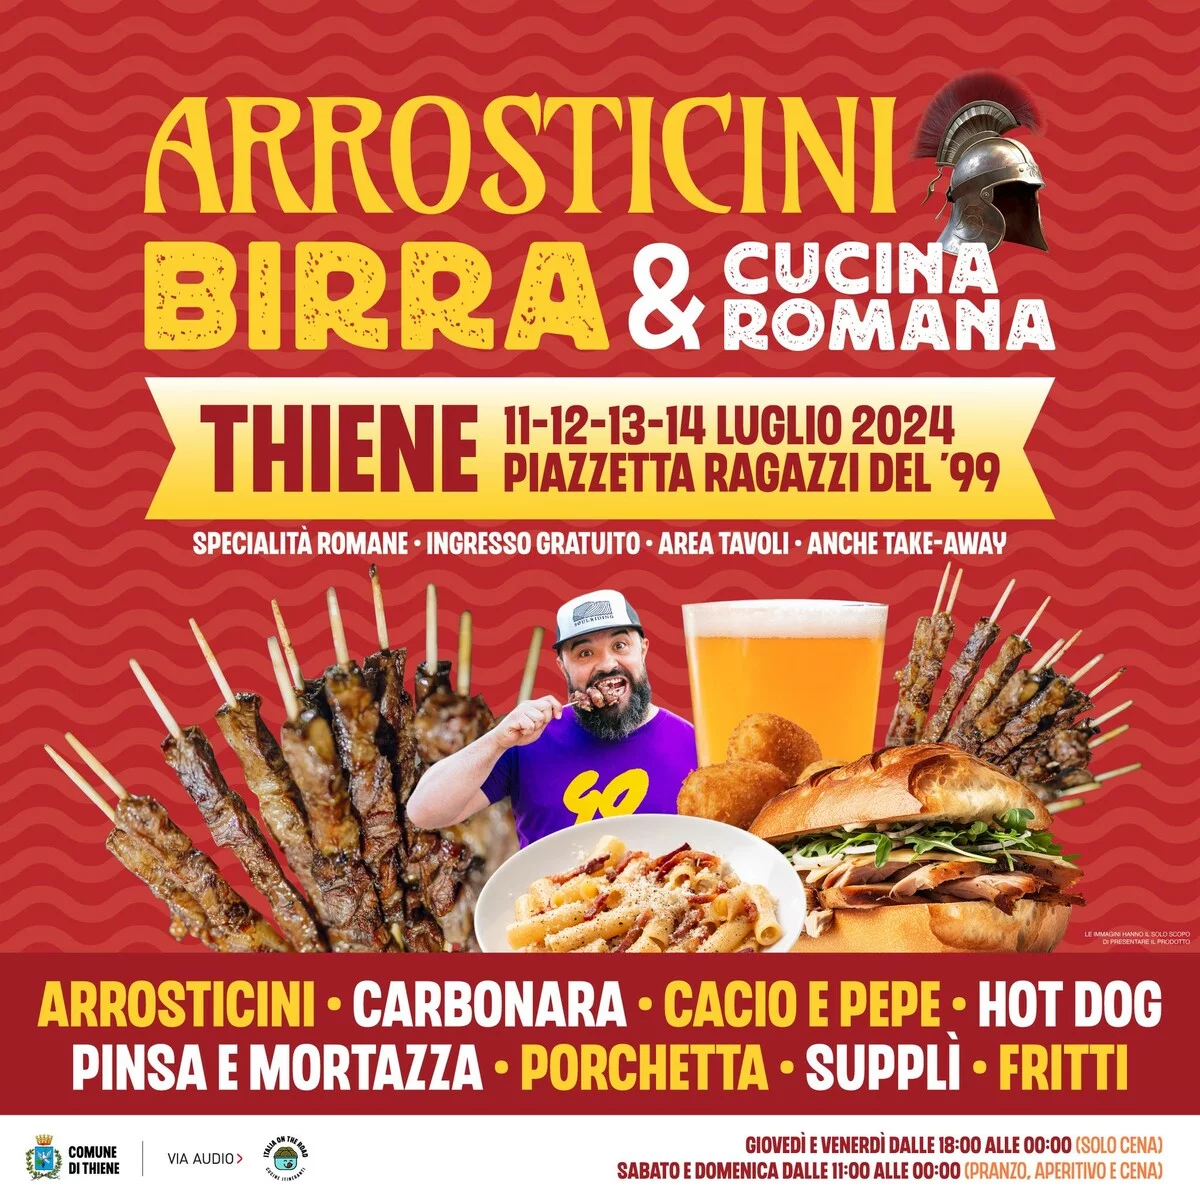 Arrosticini Birra & Cucina Romana a Thiene